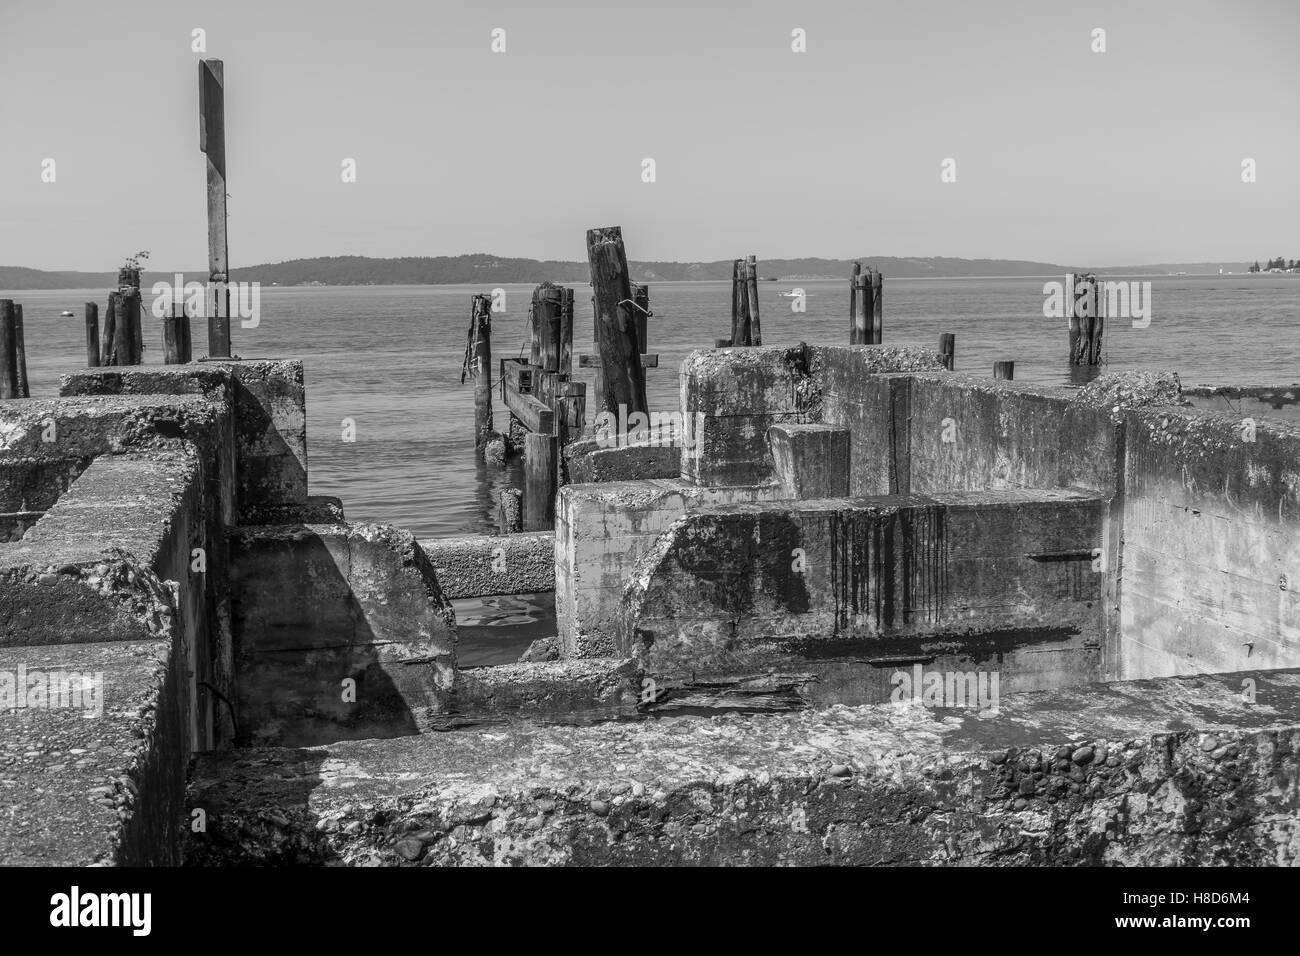 Immagine dei resti di un edificio dall'acqua in Ruston, Washington. Immagine in bianco e nero. Foto Stock